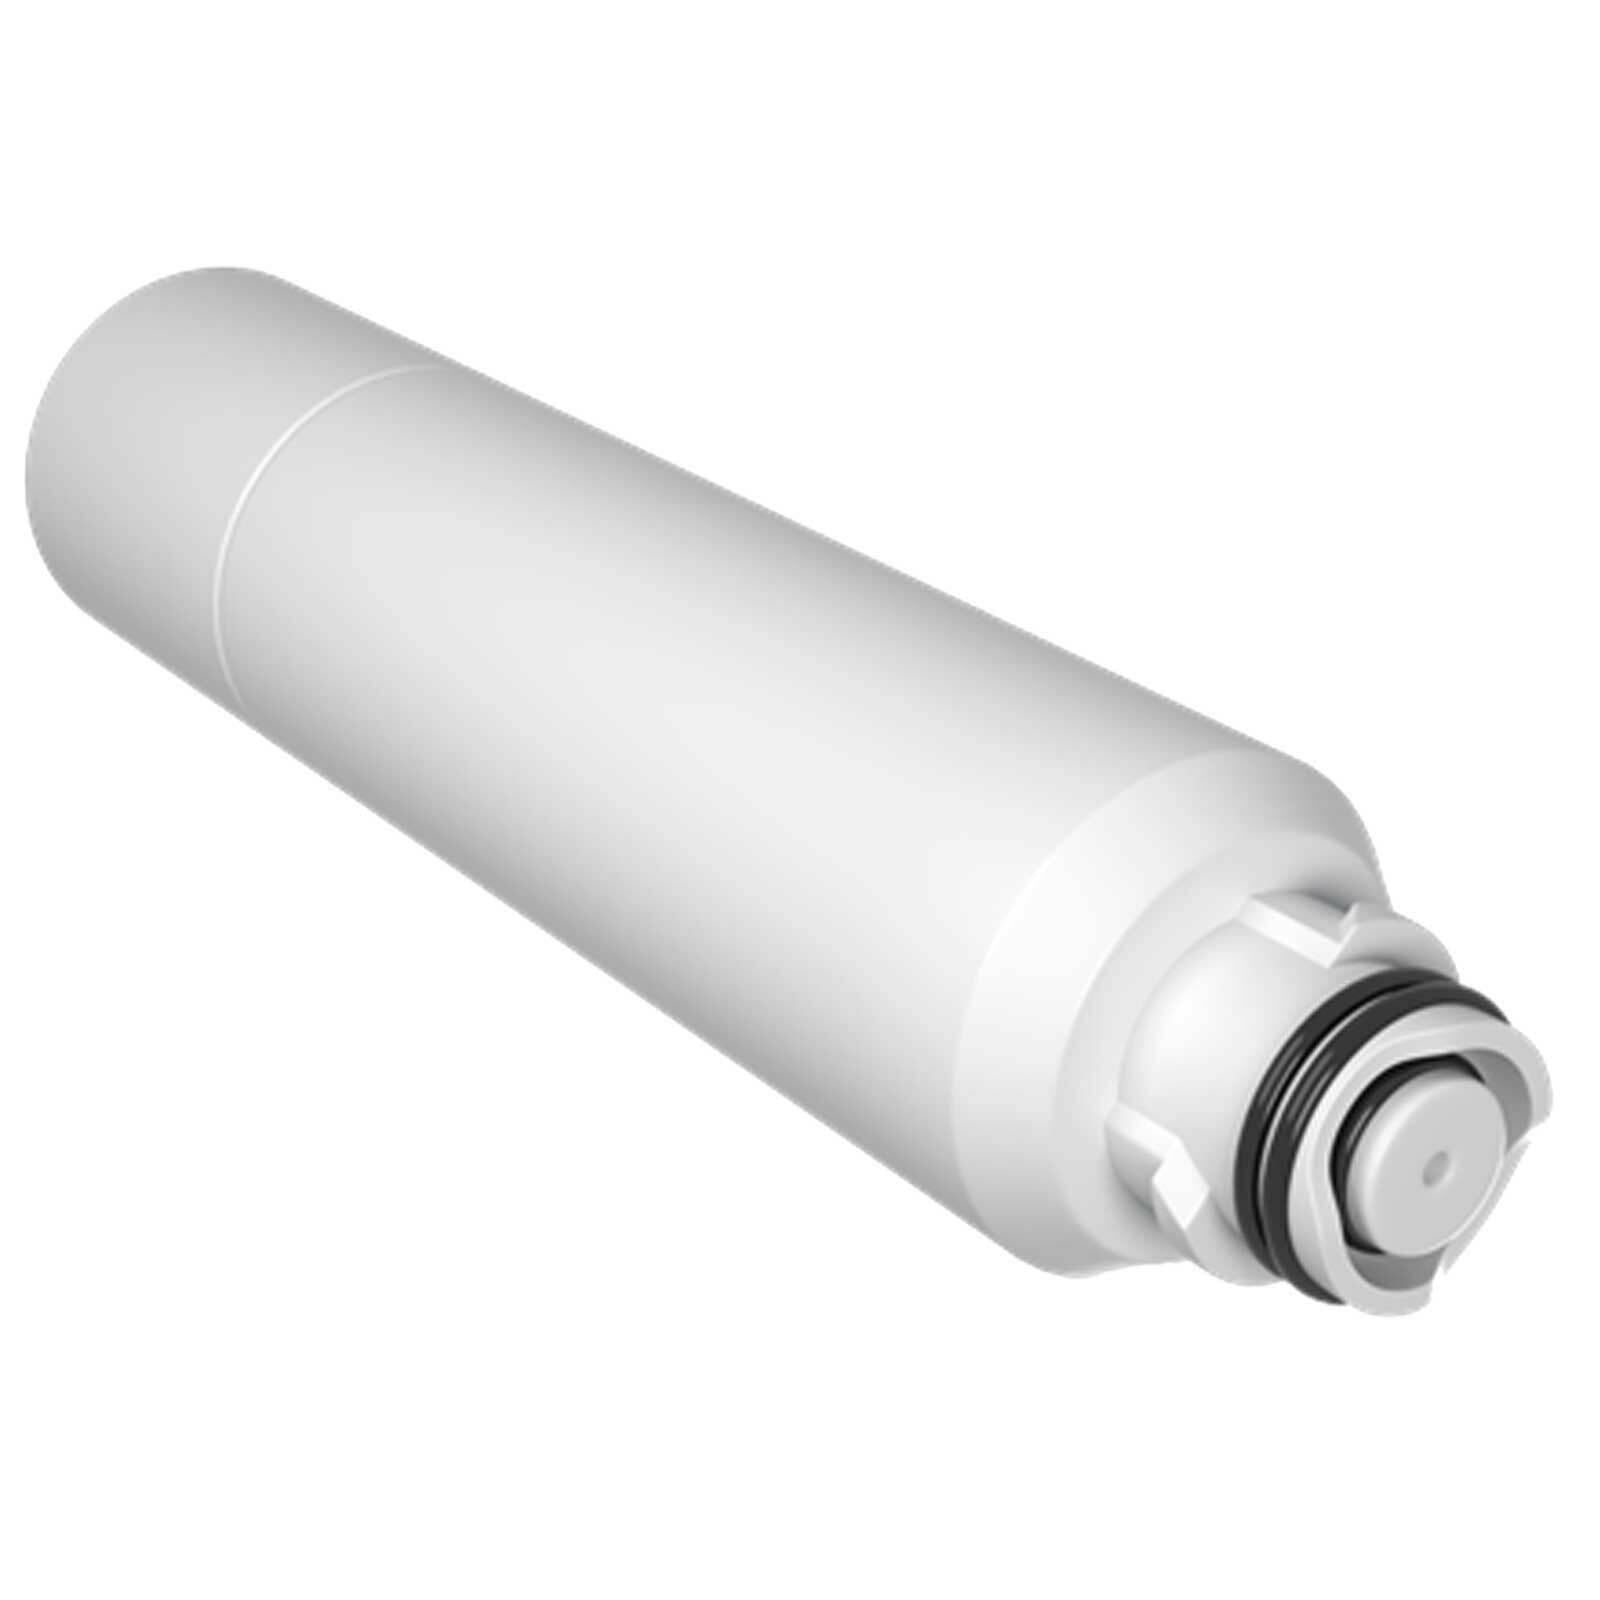 Refridgerator Water Filter For Samsung DA29-00020B-2 DA-97-08006B DA29-00019A Sparesbarn